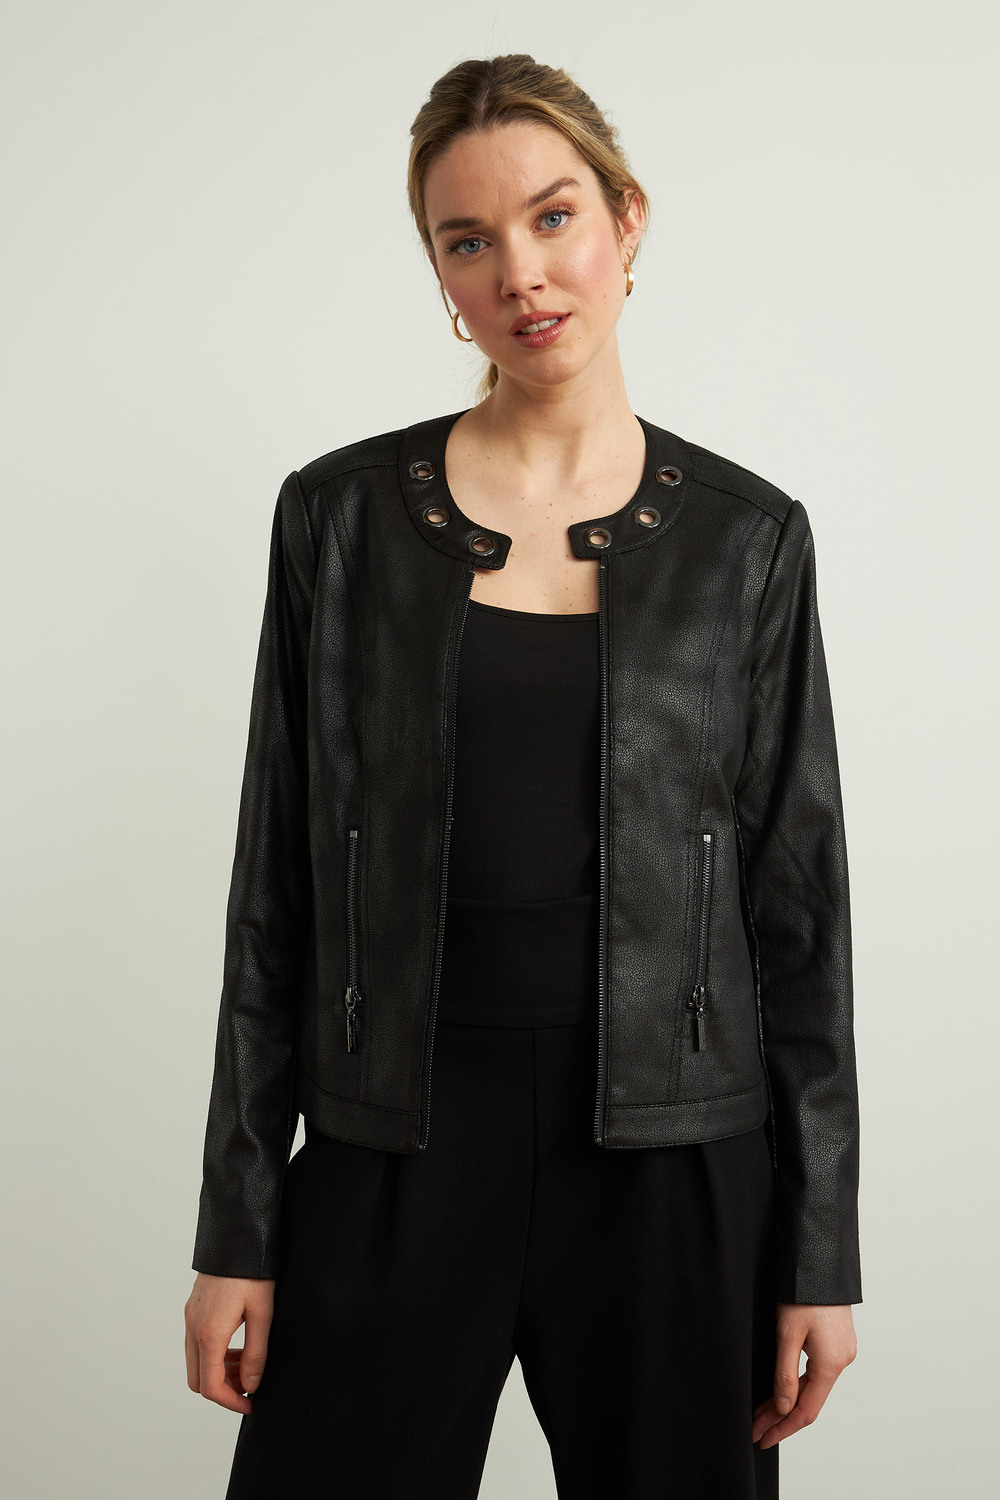 Joseph Ribkoff Faux Leather Jacket Style 213922. Black